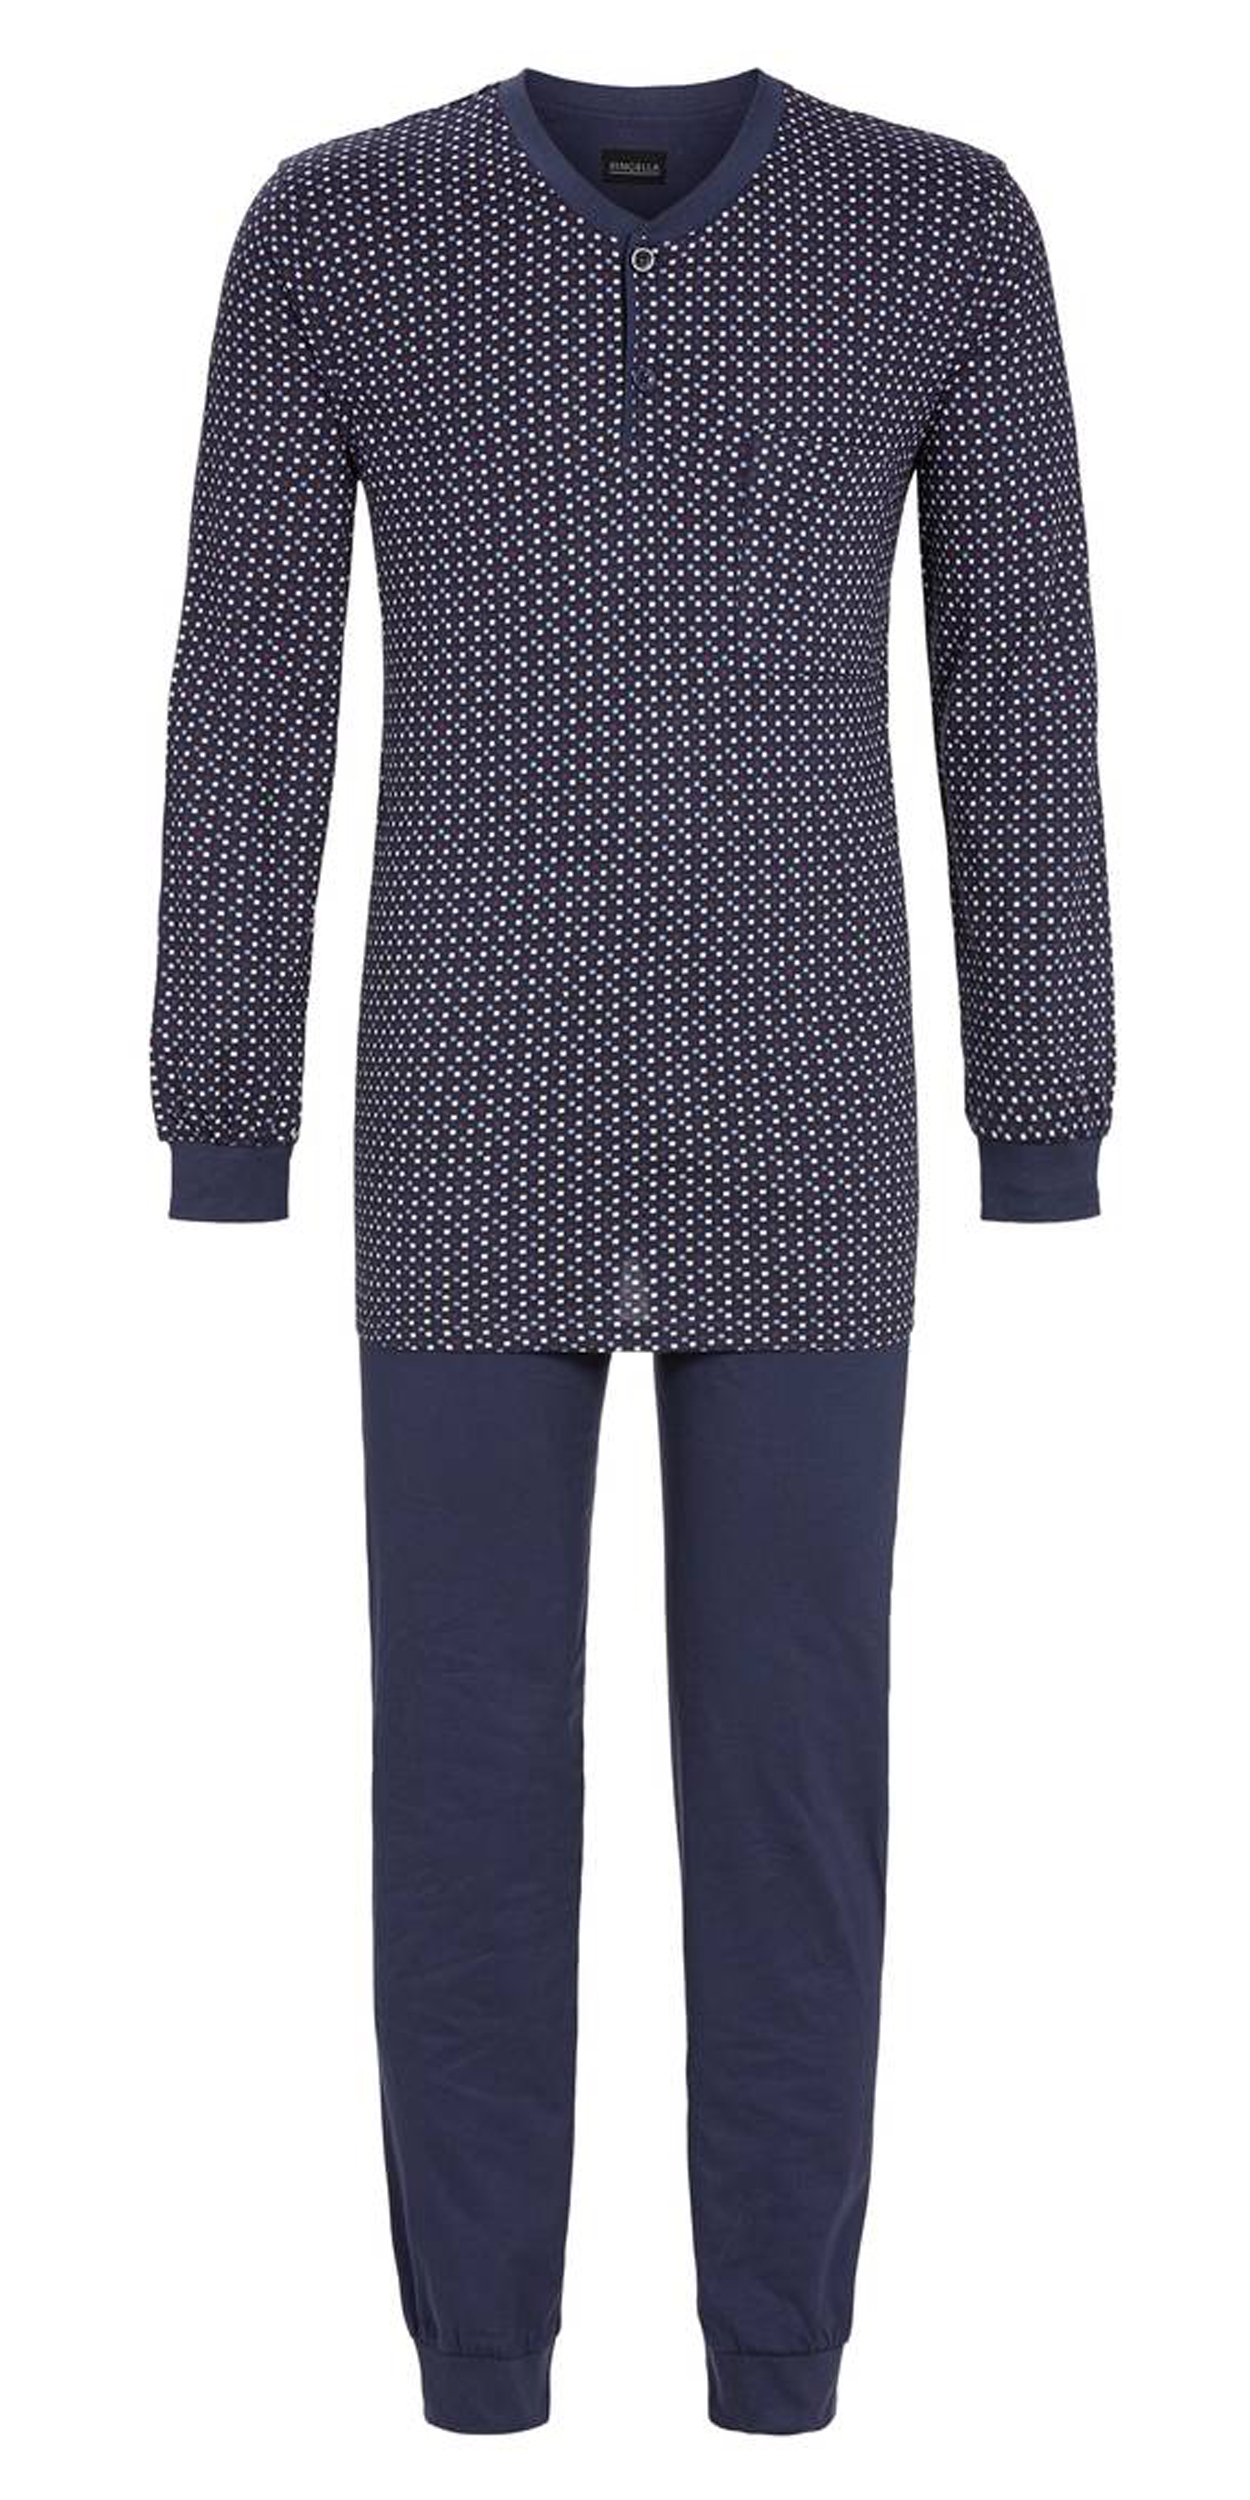 pyjama long ringella en coton mélangé : tee-shirt manches longues à micro motifs et pantalon bleu marine